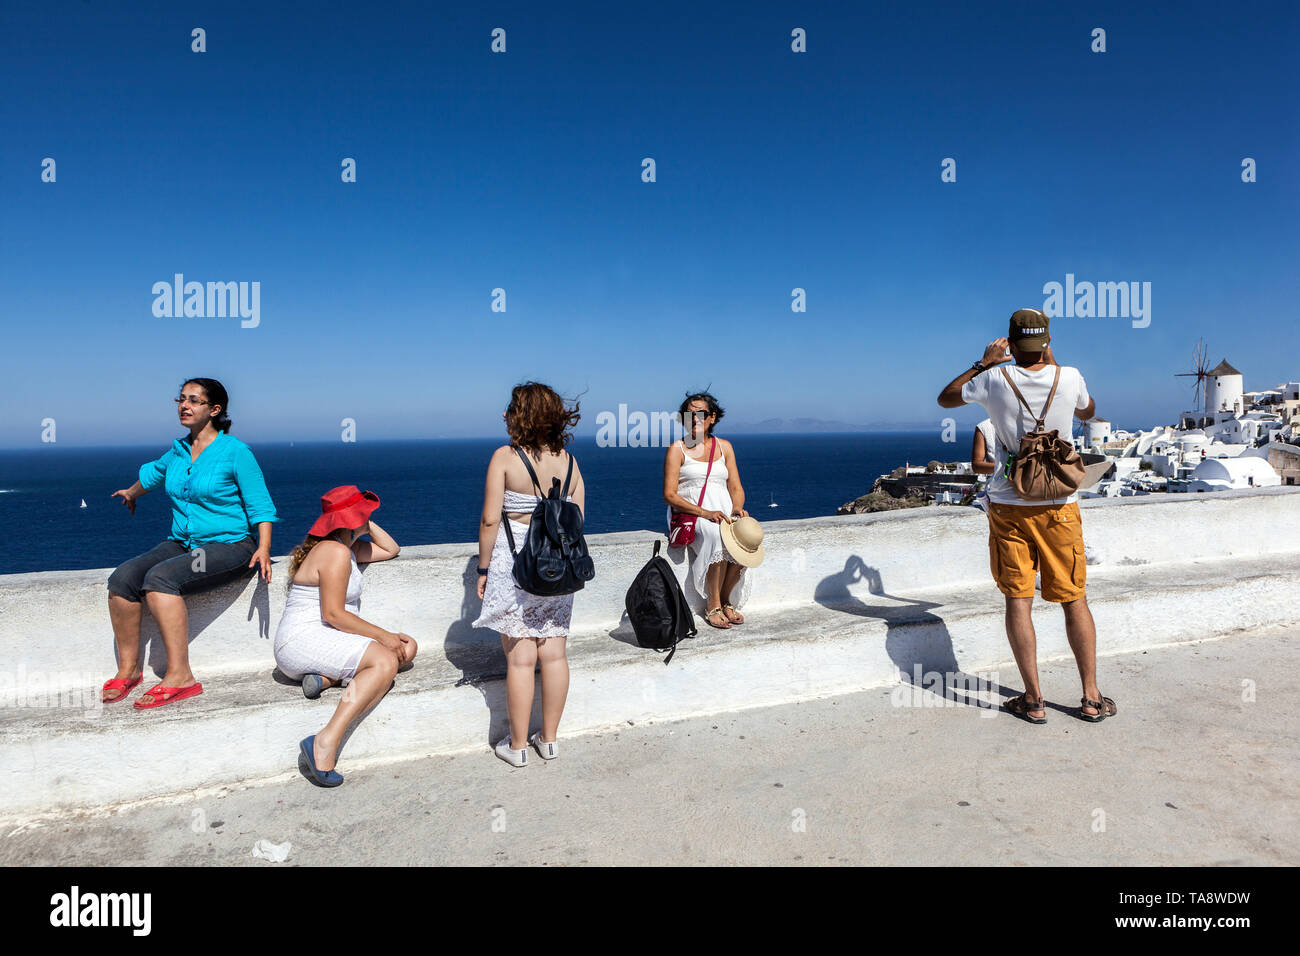 Oia Santorini turisti su una terrazza sul mare, la gente sul punto di vista famoso, isola greca, Grecia turismo Europa Foto Stock